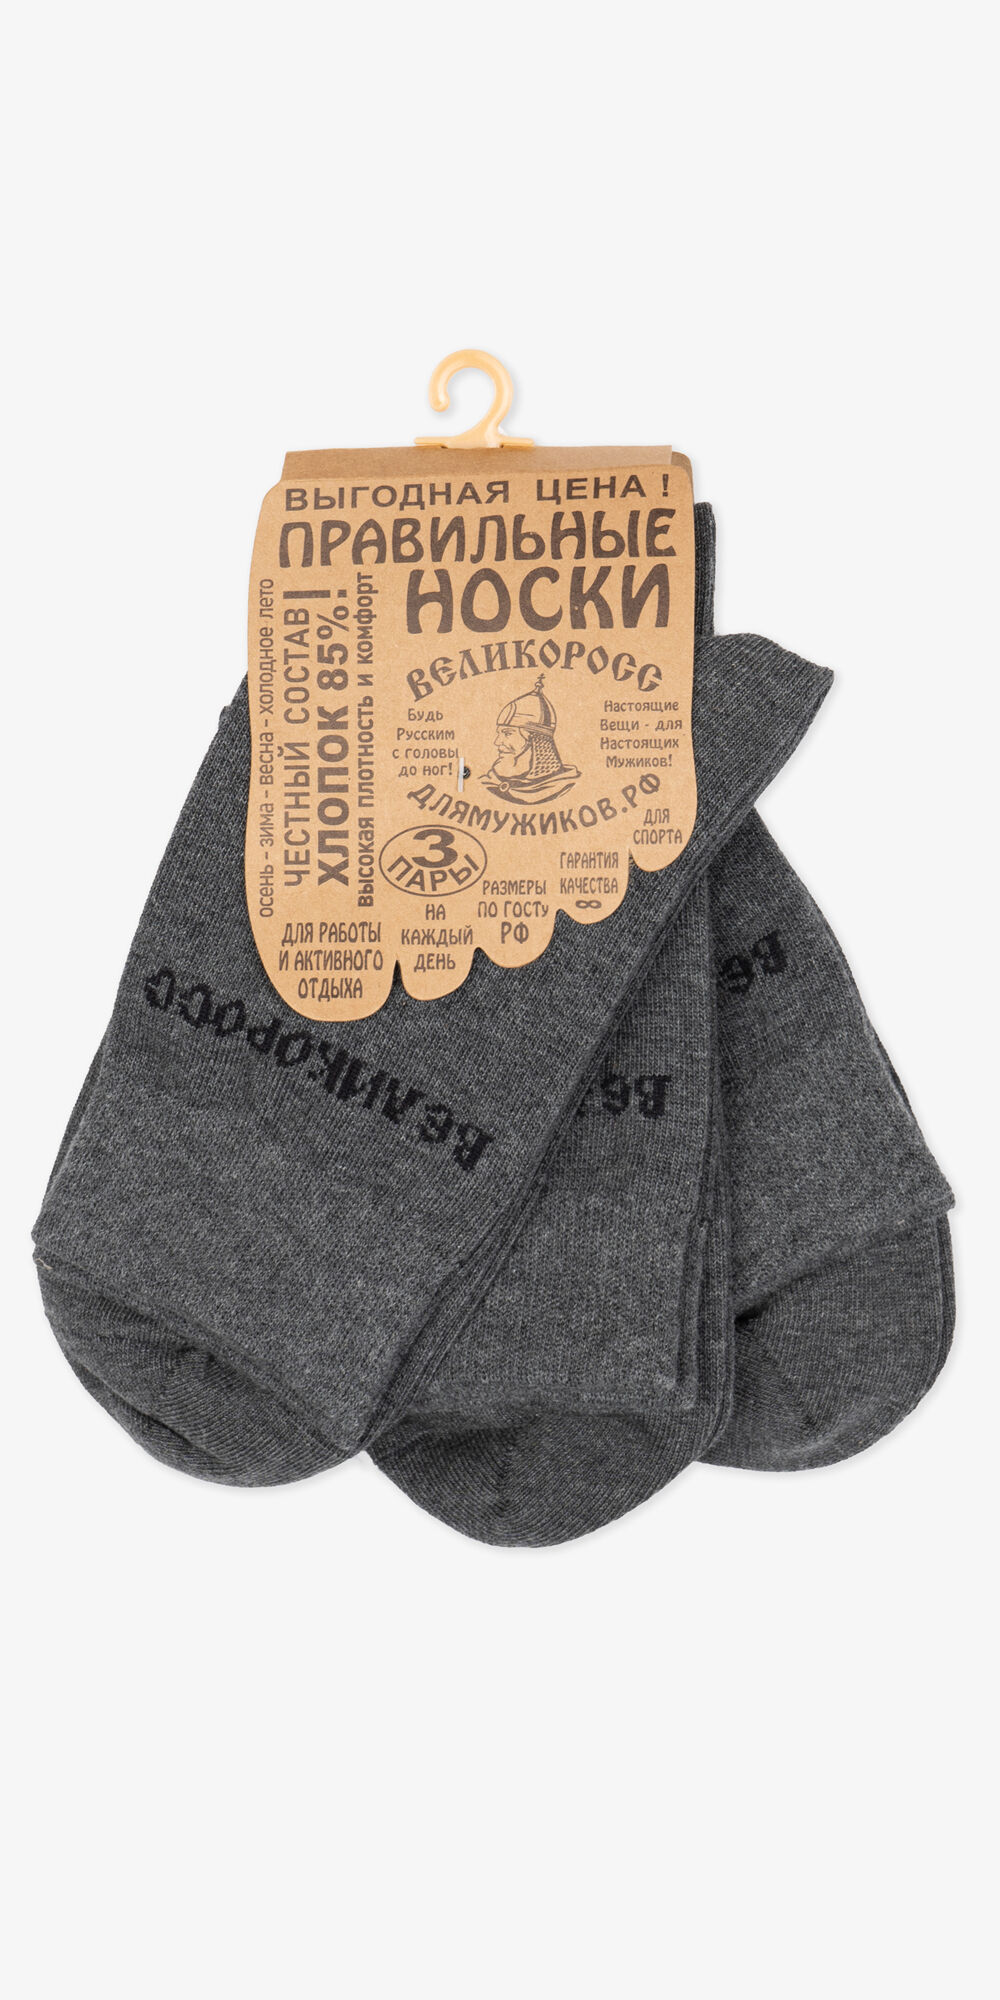 Носки длинные серого цвета – тройная упаковка